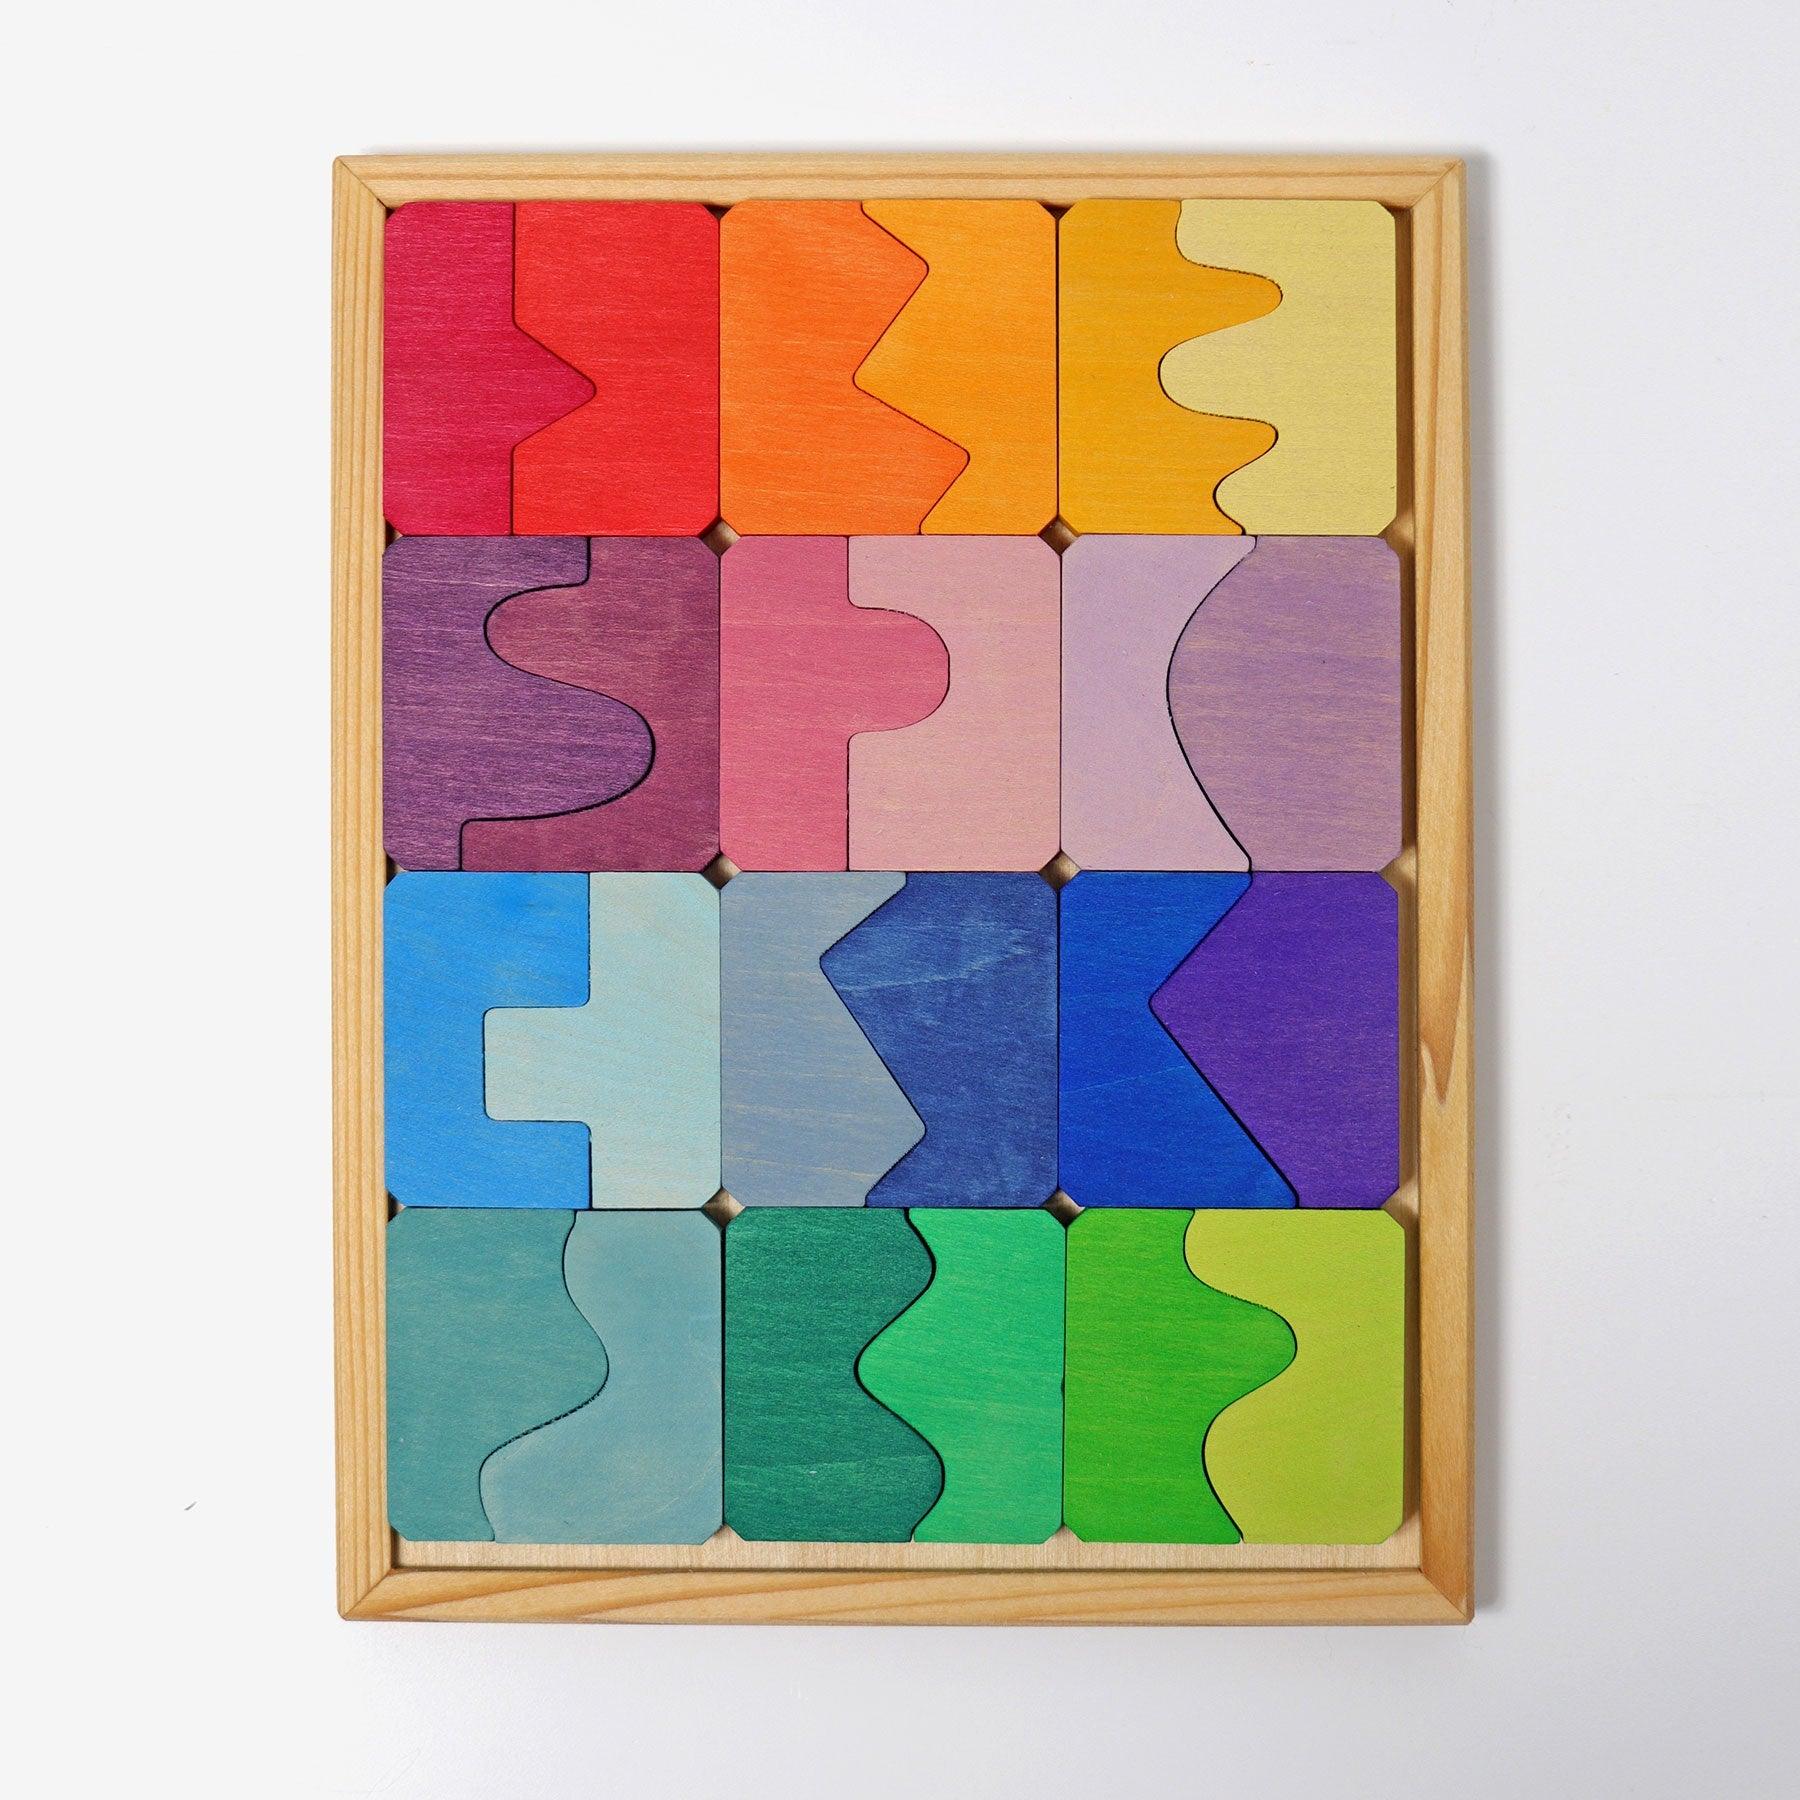 Grimm's: concave-convex puzzle Concave finds Convex